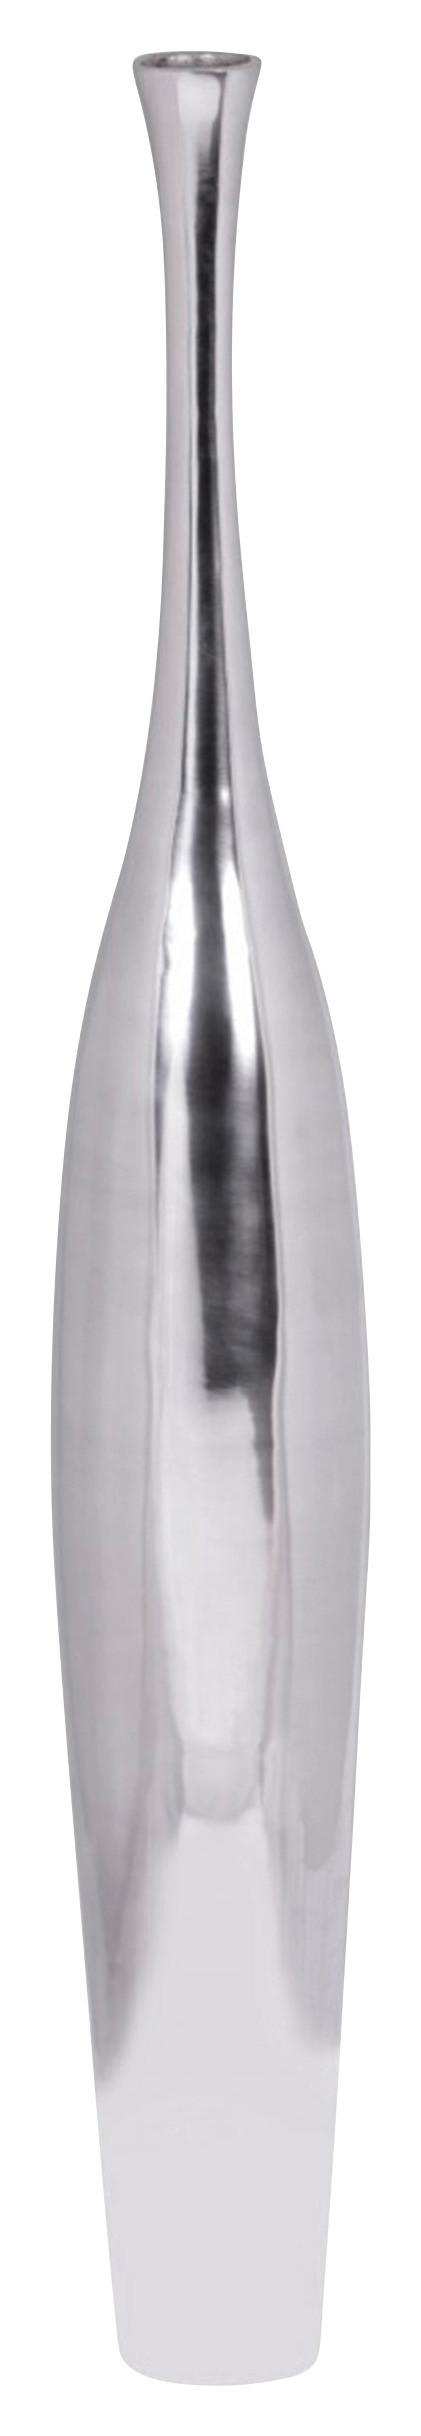 Dekorační Váza Wohnling Stříbrná - barvy stříbra, Moderní, kov (13/100/13cm) - MID.YOU